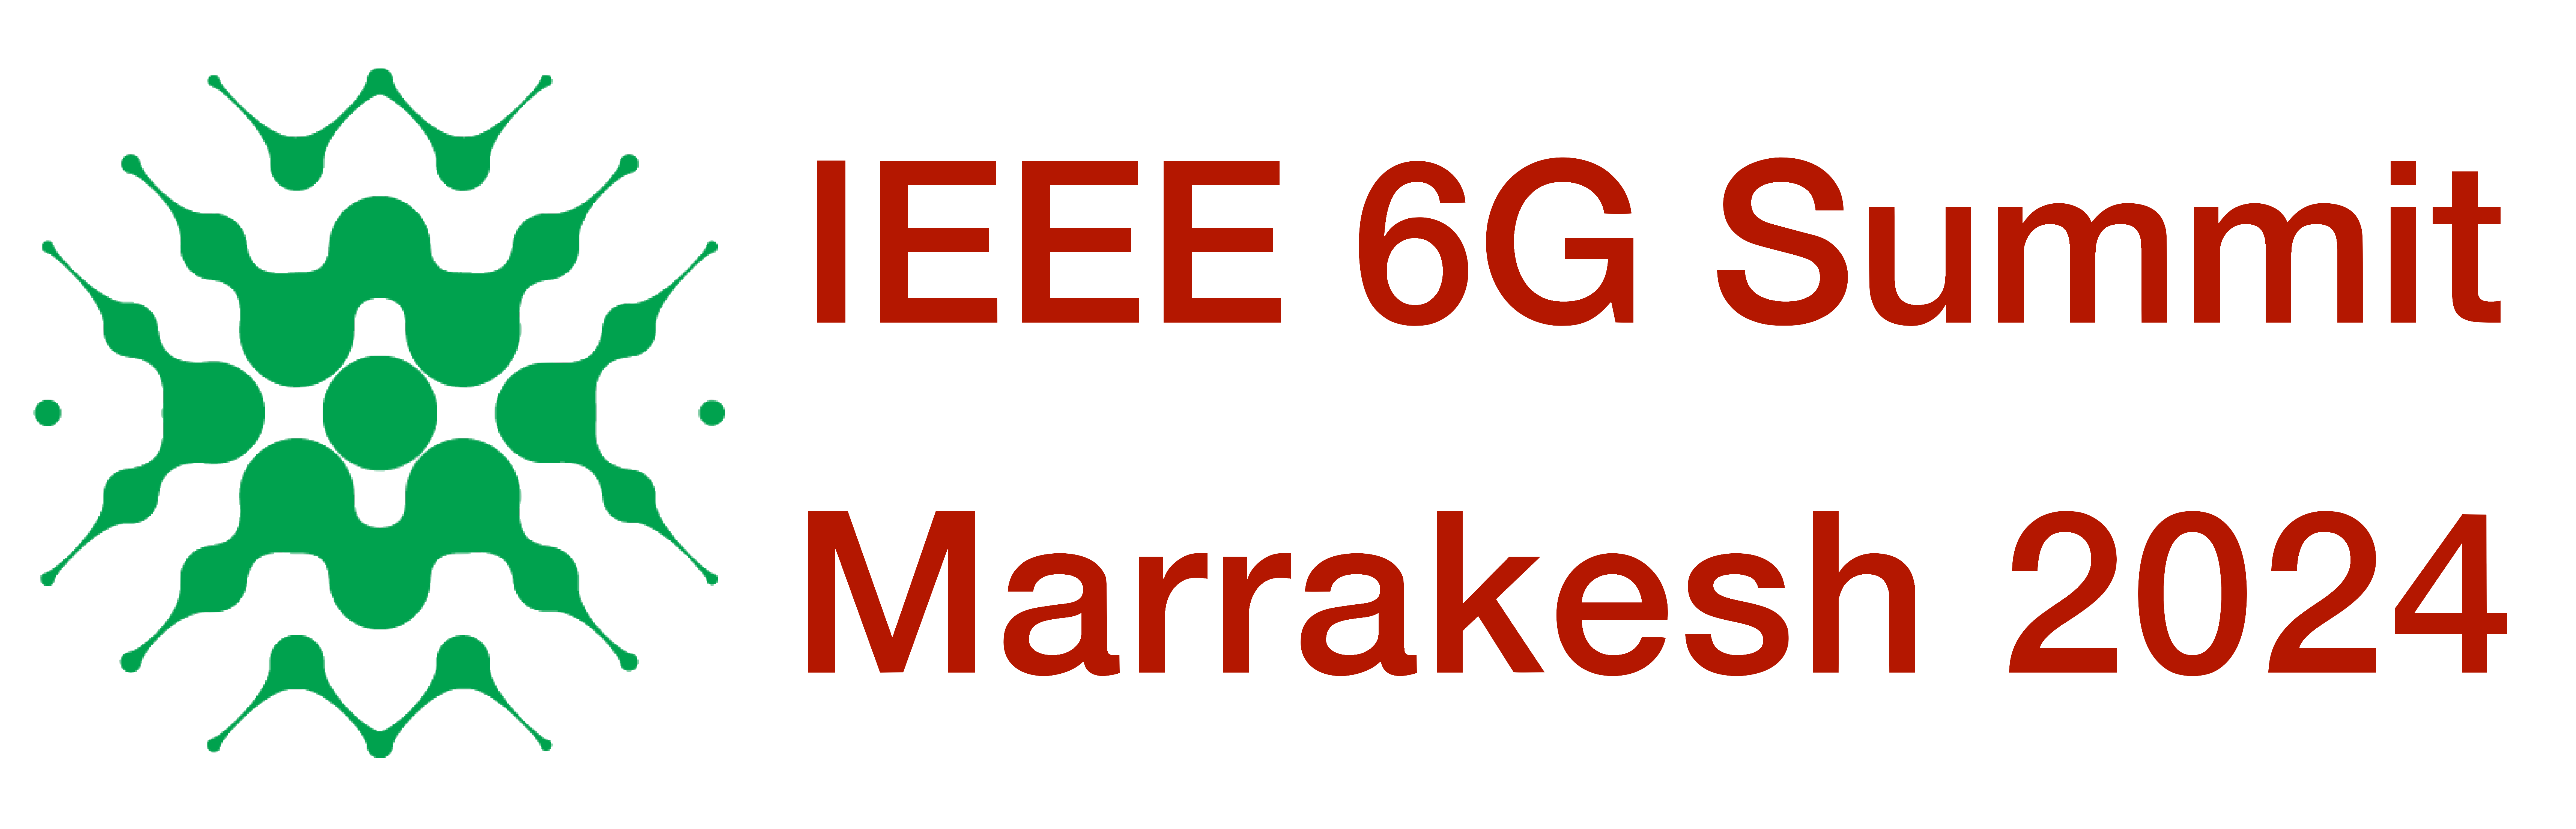 IEEE 5G Summit